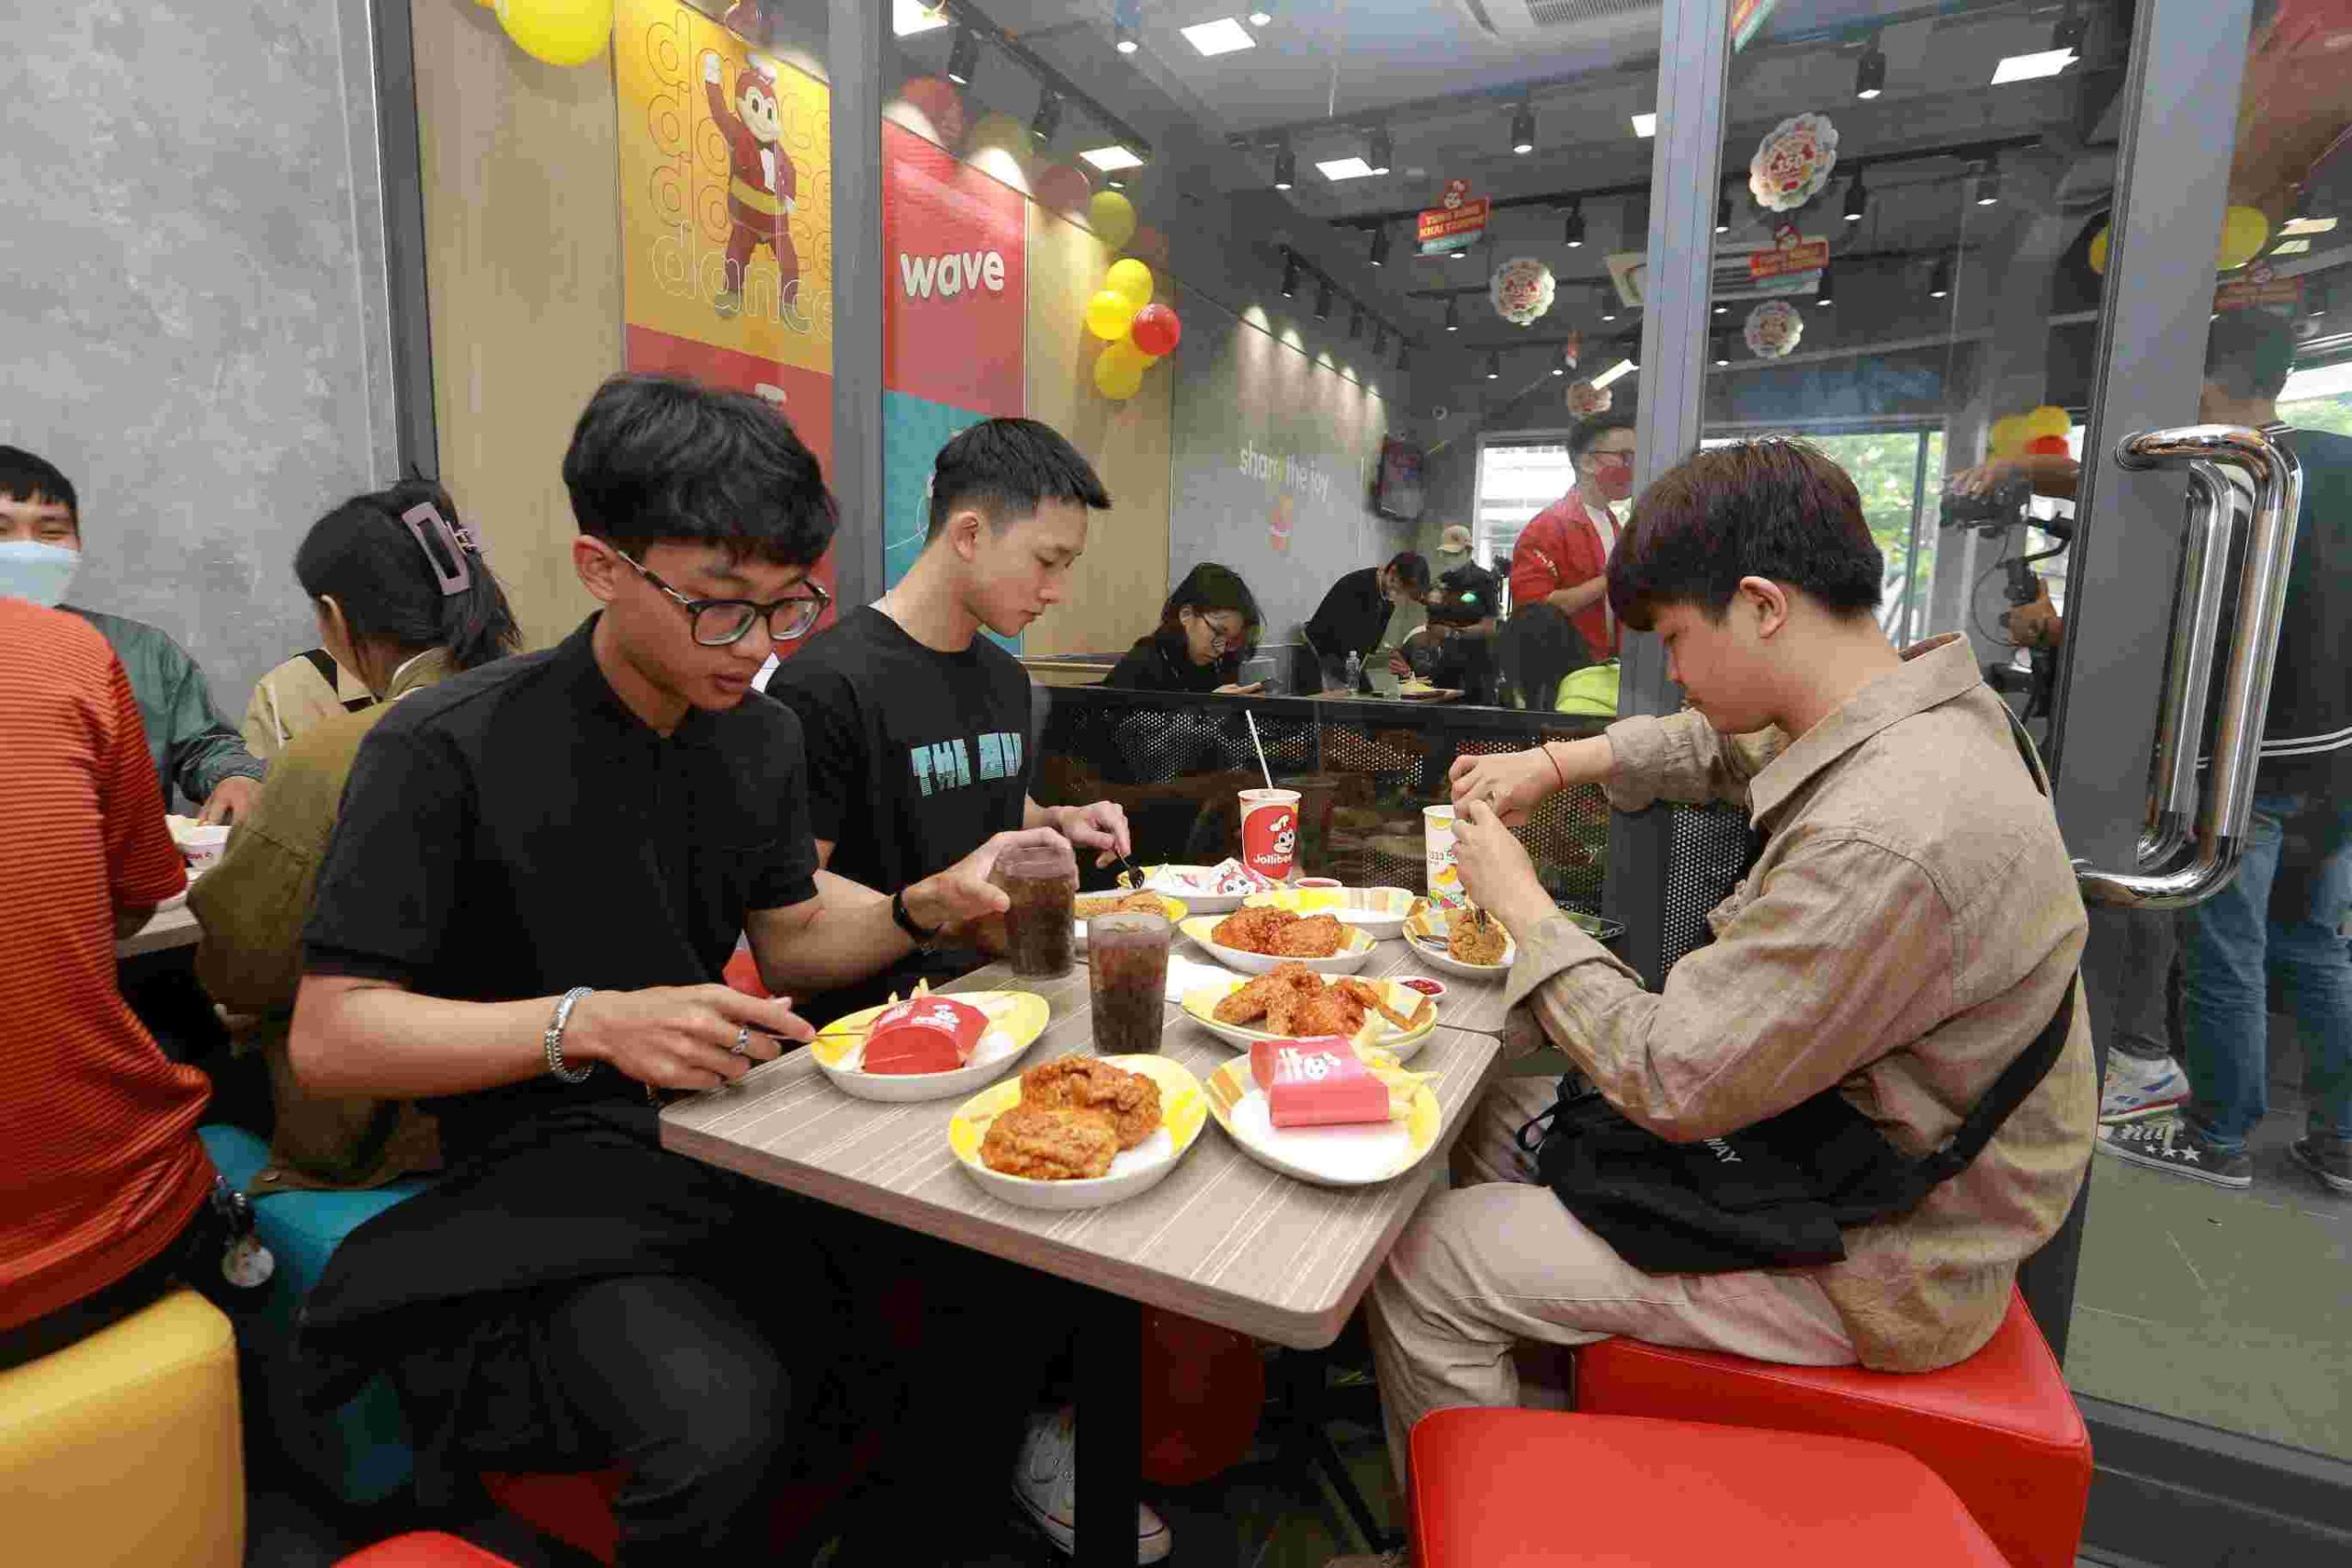 ngành dịch vụ ăn uống của Việt Nam bị ảnh hưởng đáng kể bởi xu hướng ăn ngoài